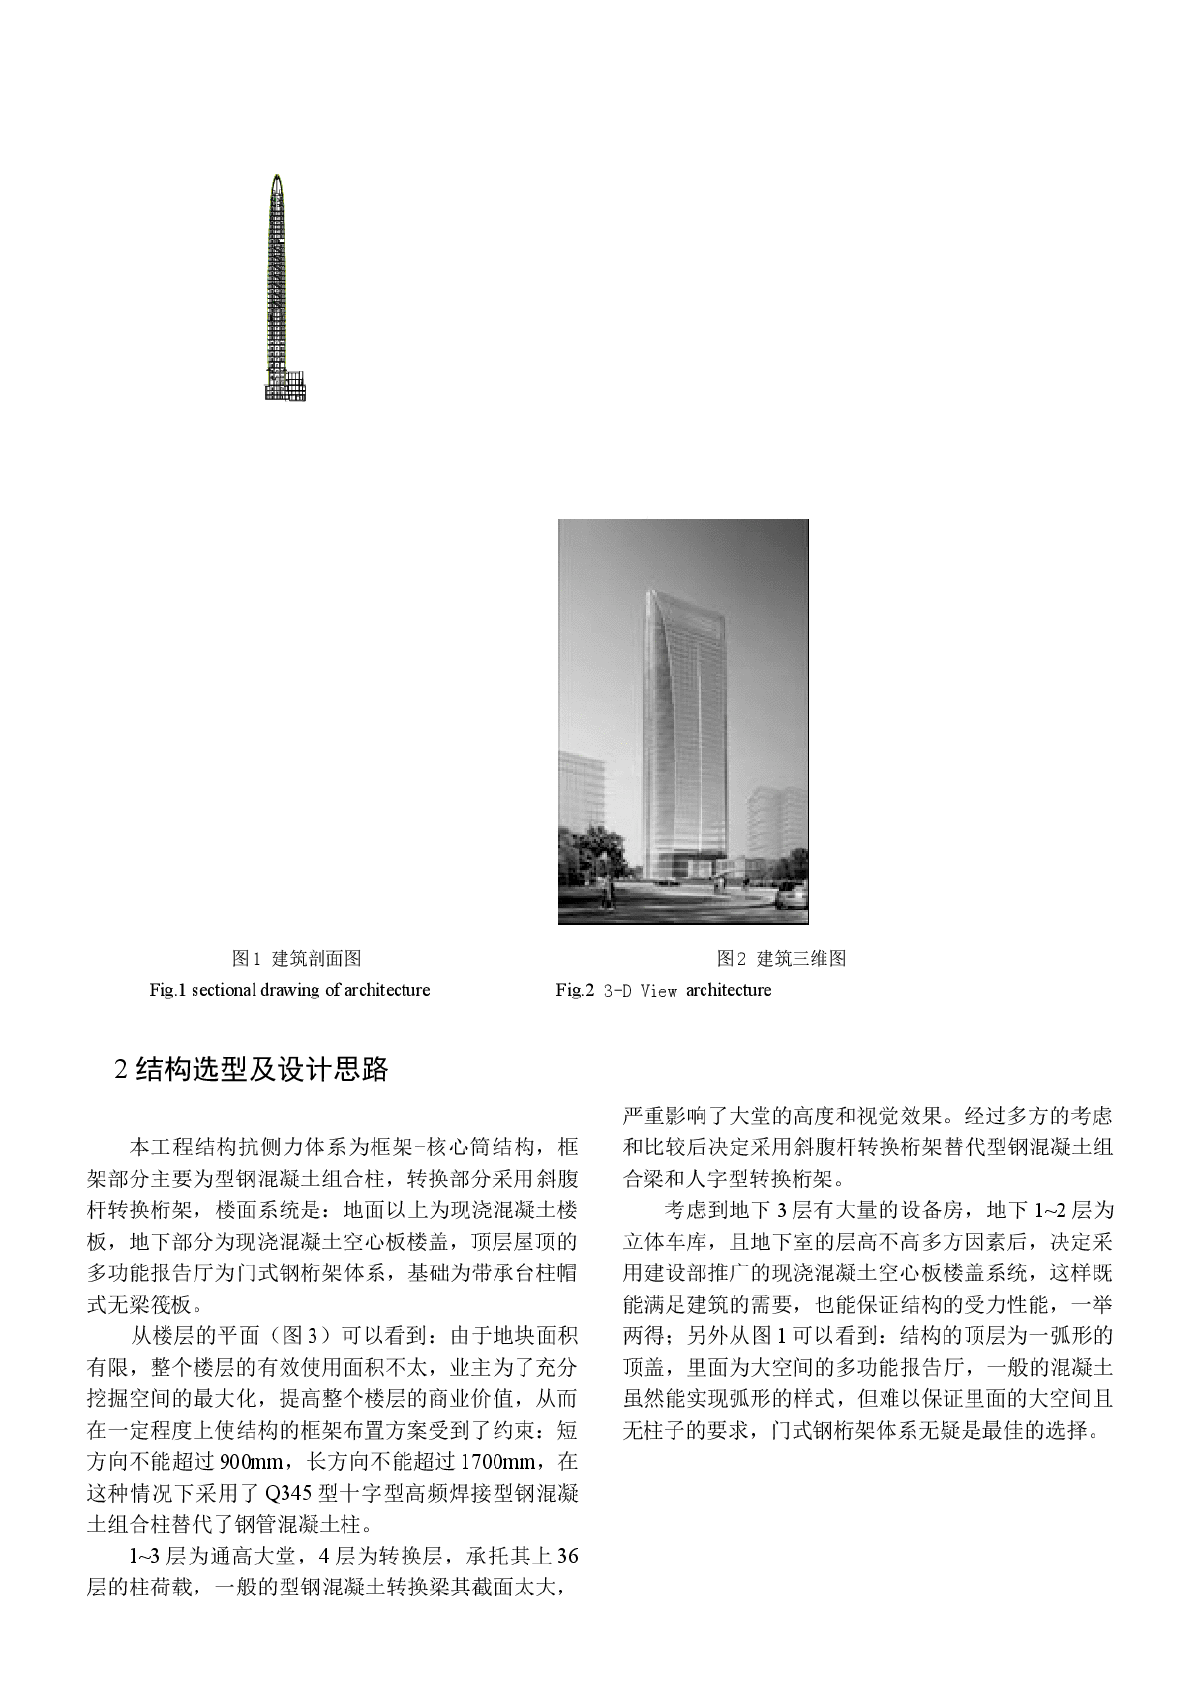 腾讯大厦超限高层的结构设计分析-图二